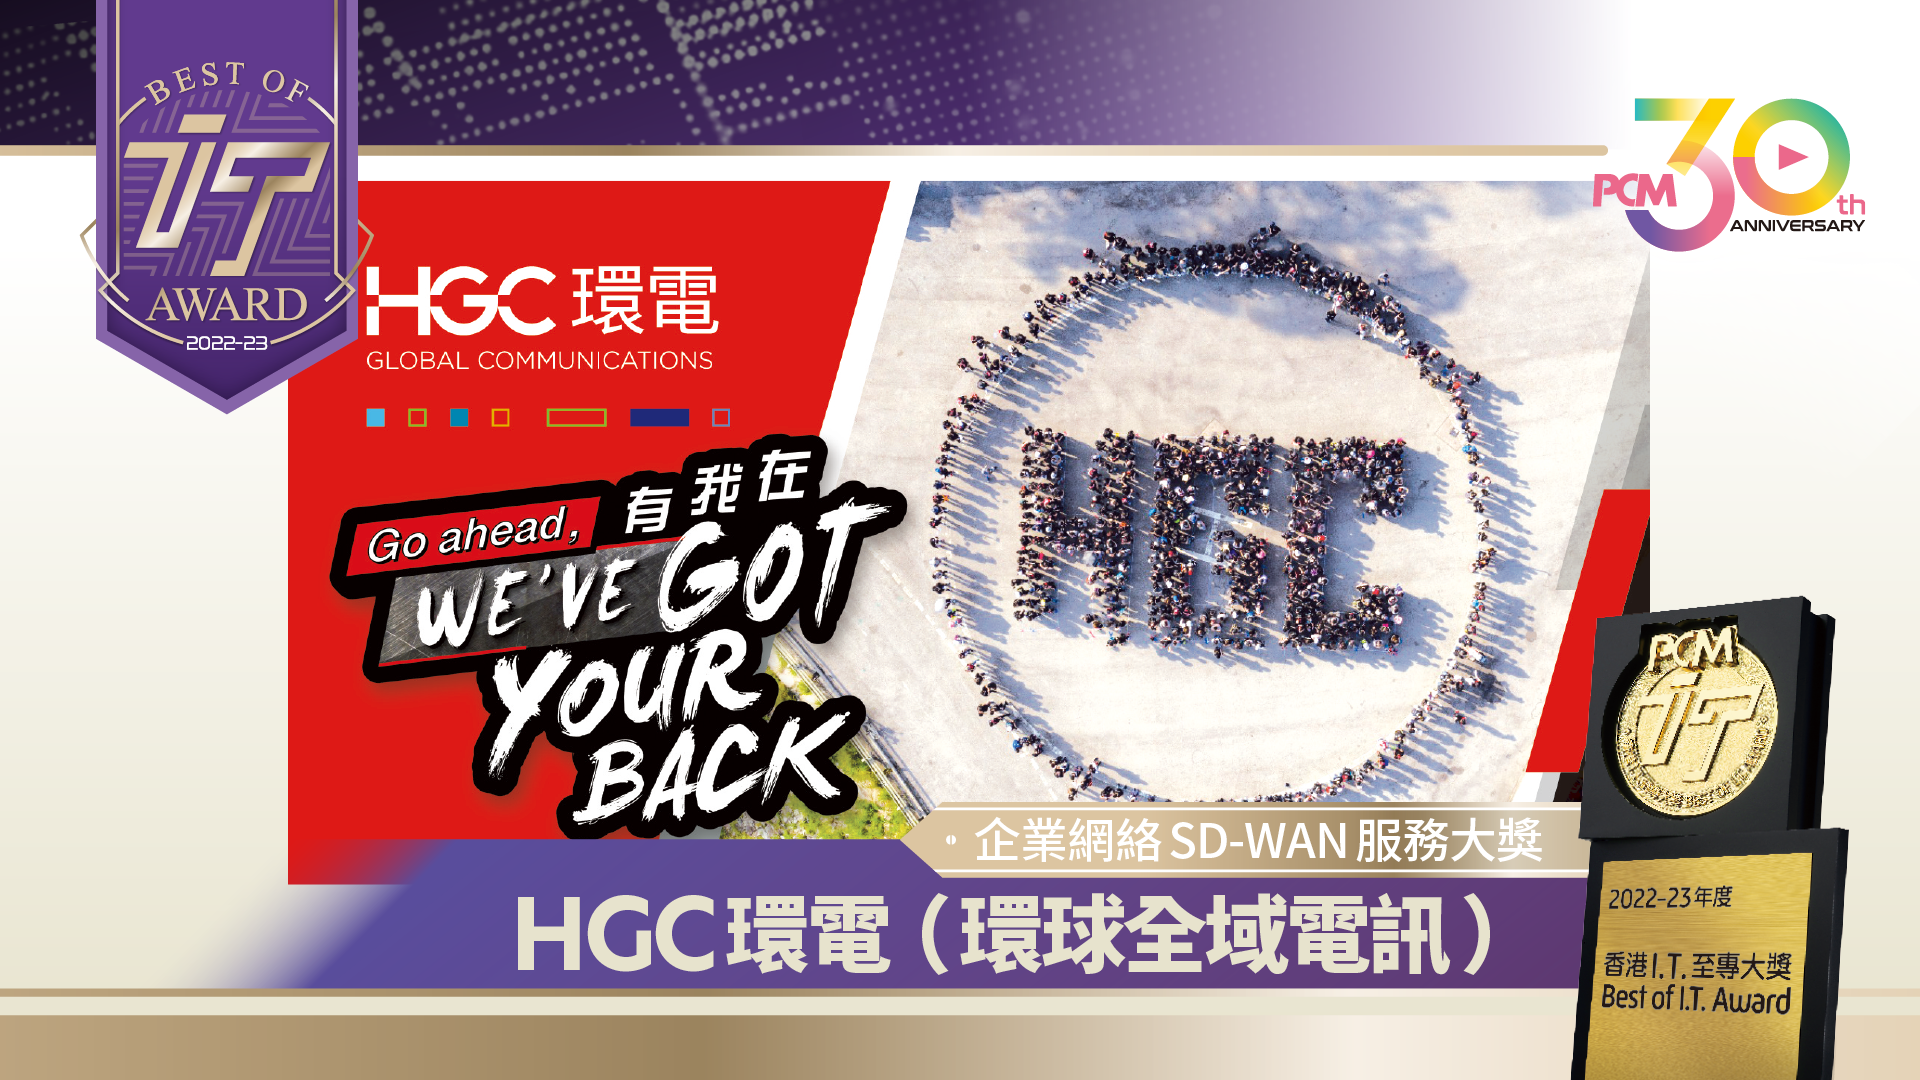 企業網絡 SD-WAN 服務大獎 HGC 環電（環球全域電訊）